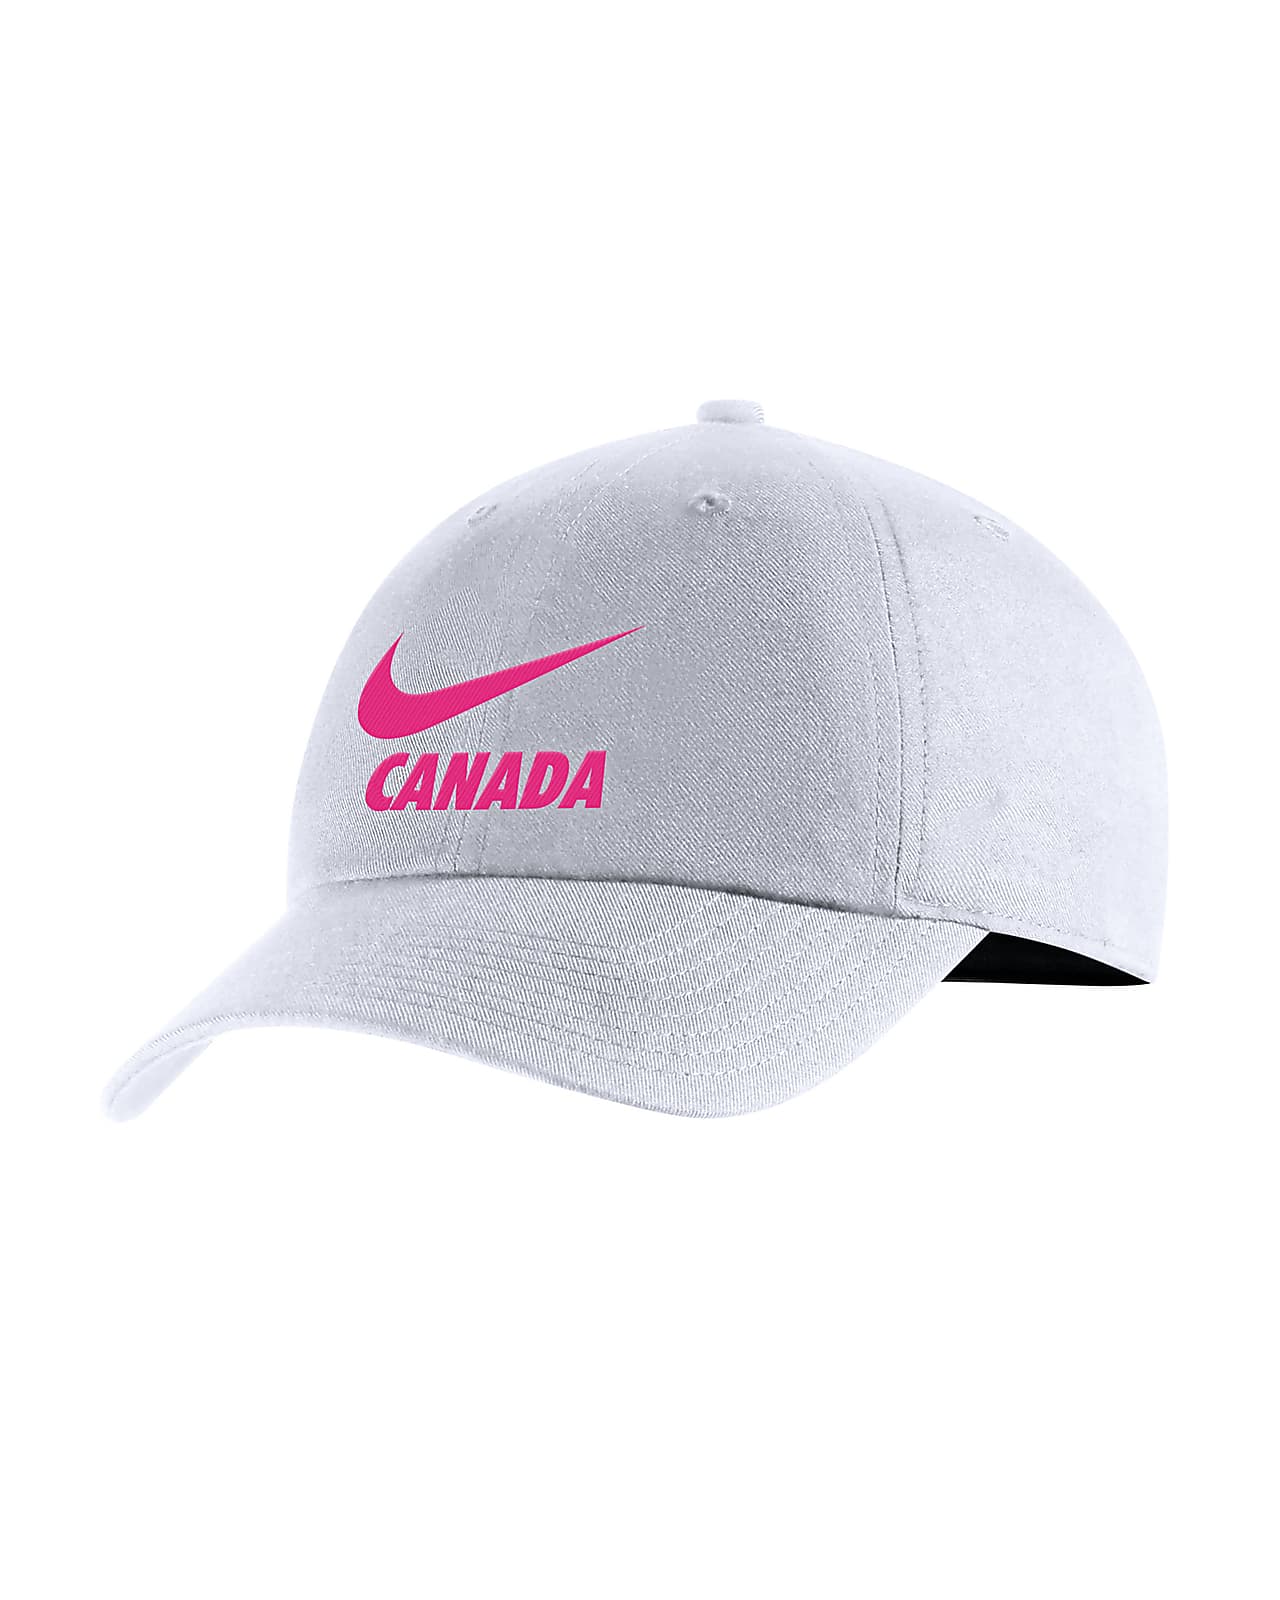 Vakman Beschuldiging Baars Canada Heritage86 Women's Adjustable Hat. Nike.com